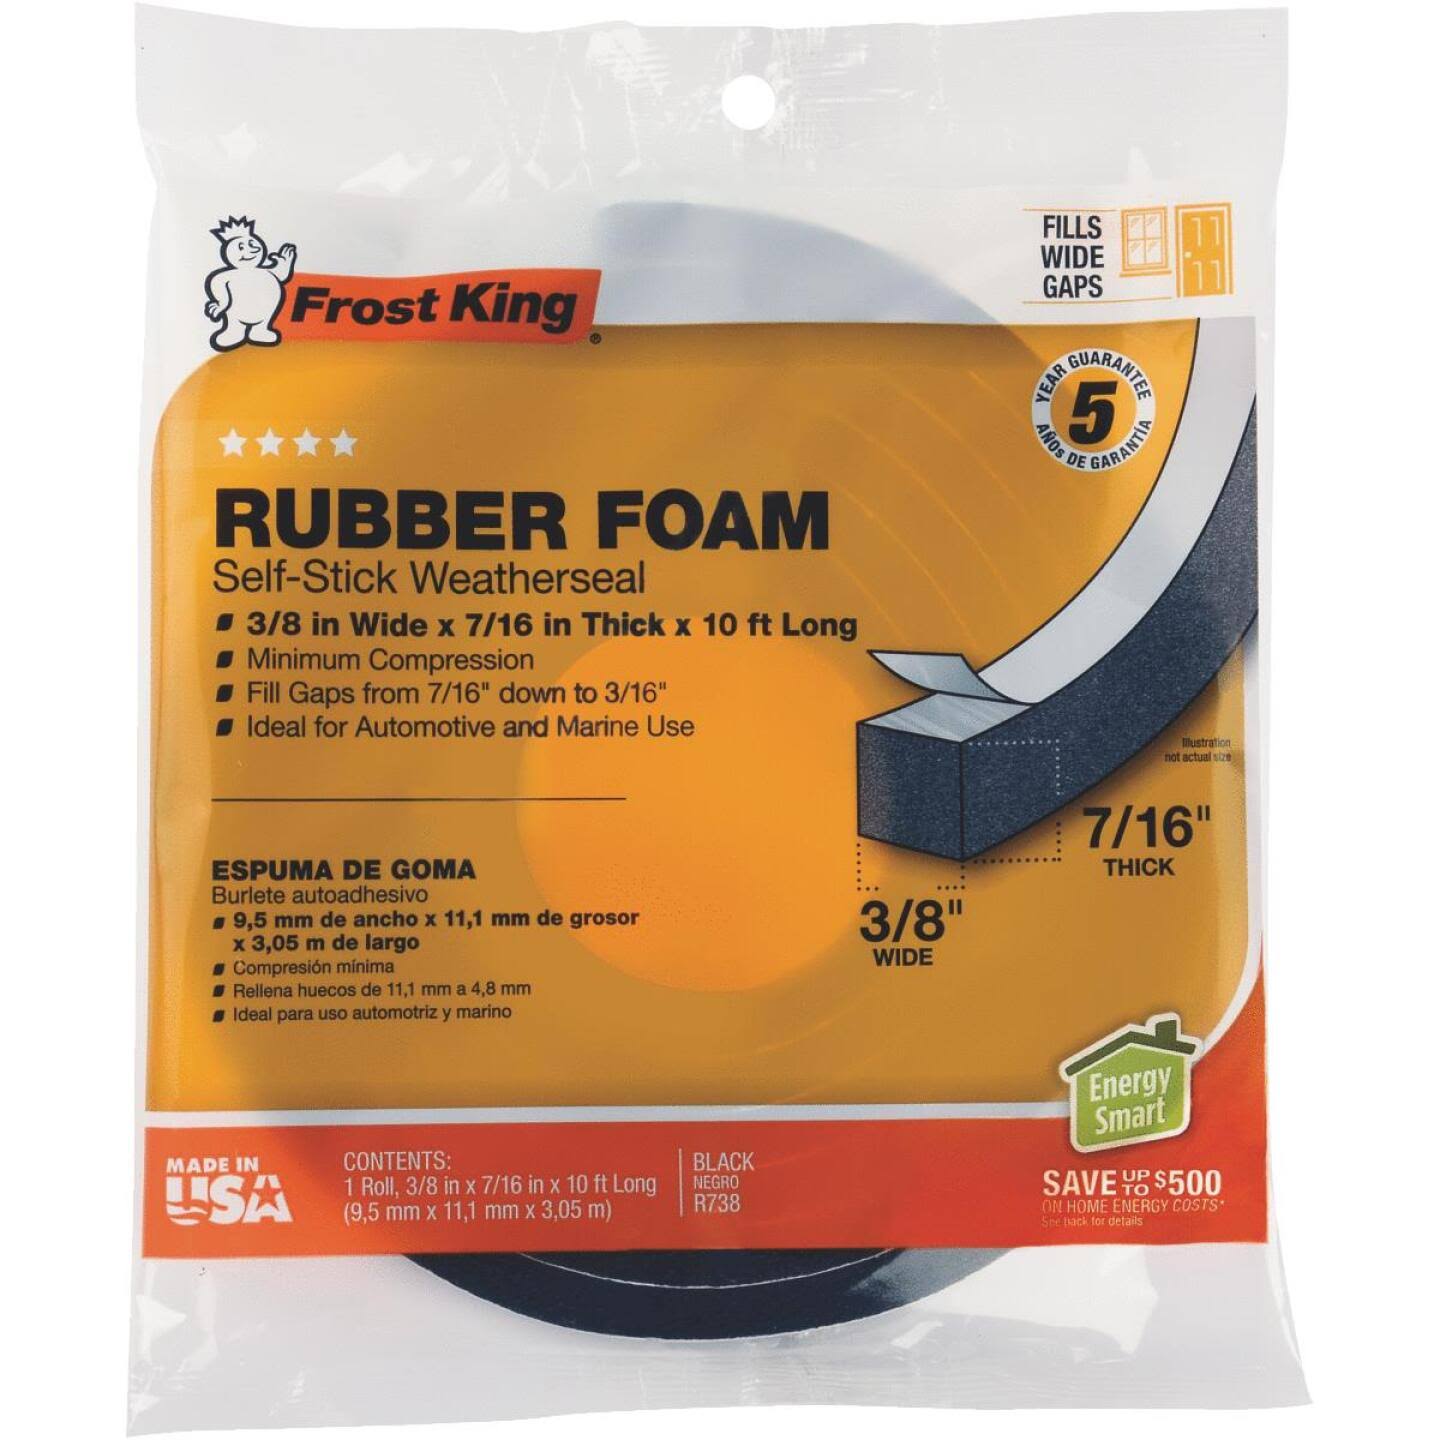 Frost King Rubber Foam Wheater Seal Tape - 3/8" x 7/16" x 10'